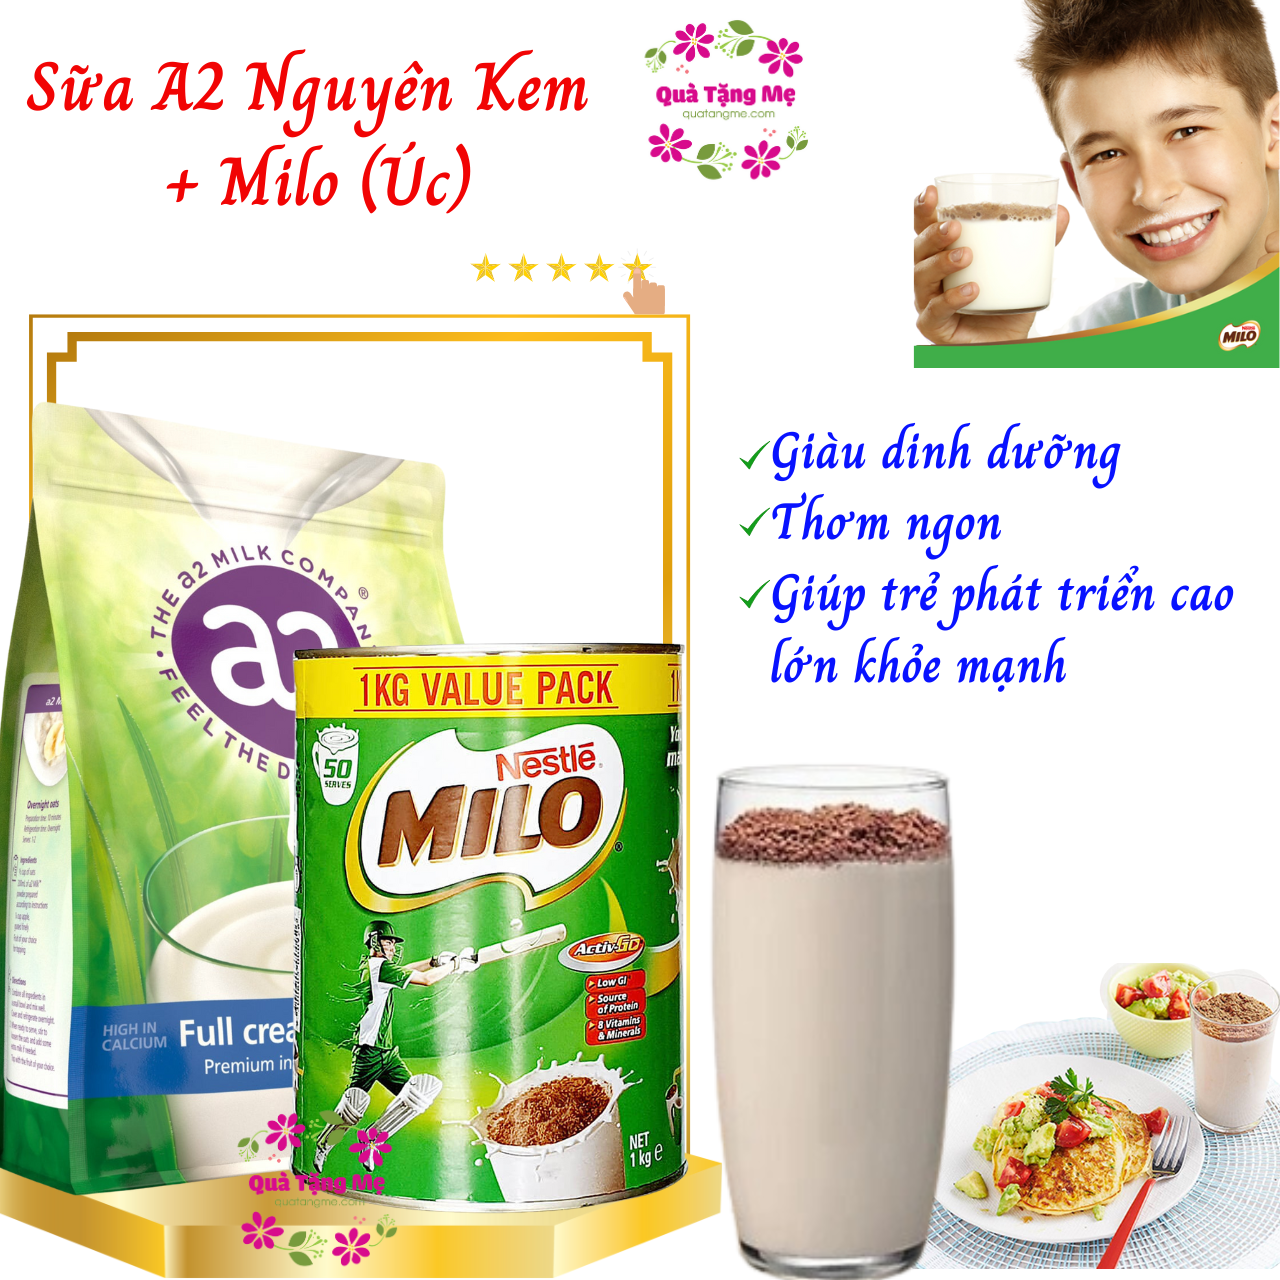 Sữa Milo Úc Nestle và A2 nguyên kem Úc giàu dinh dưỡng giúp trẻ phát triển chiều cao và tăng cường sức tăng- QuaTangMe Extaste